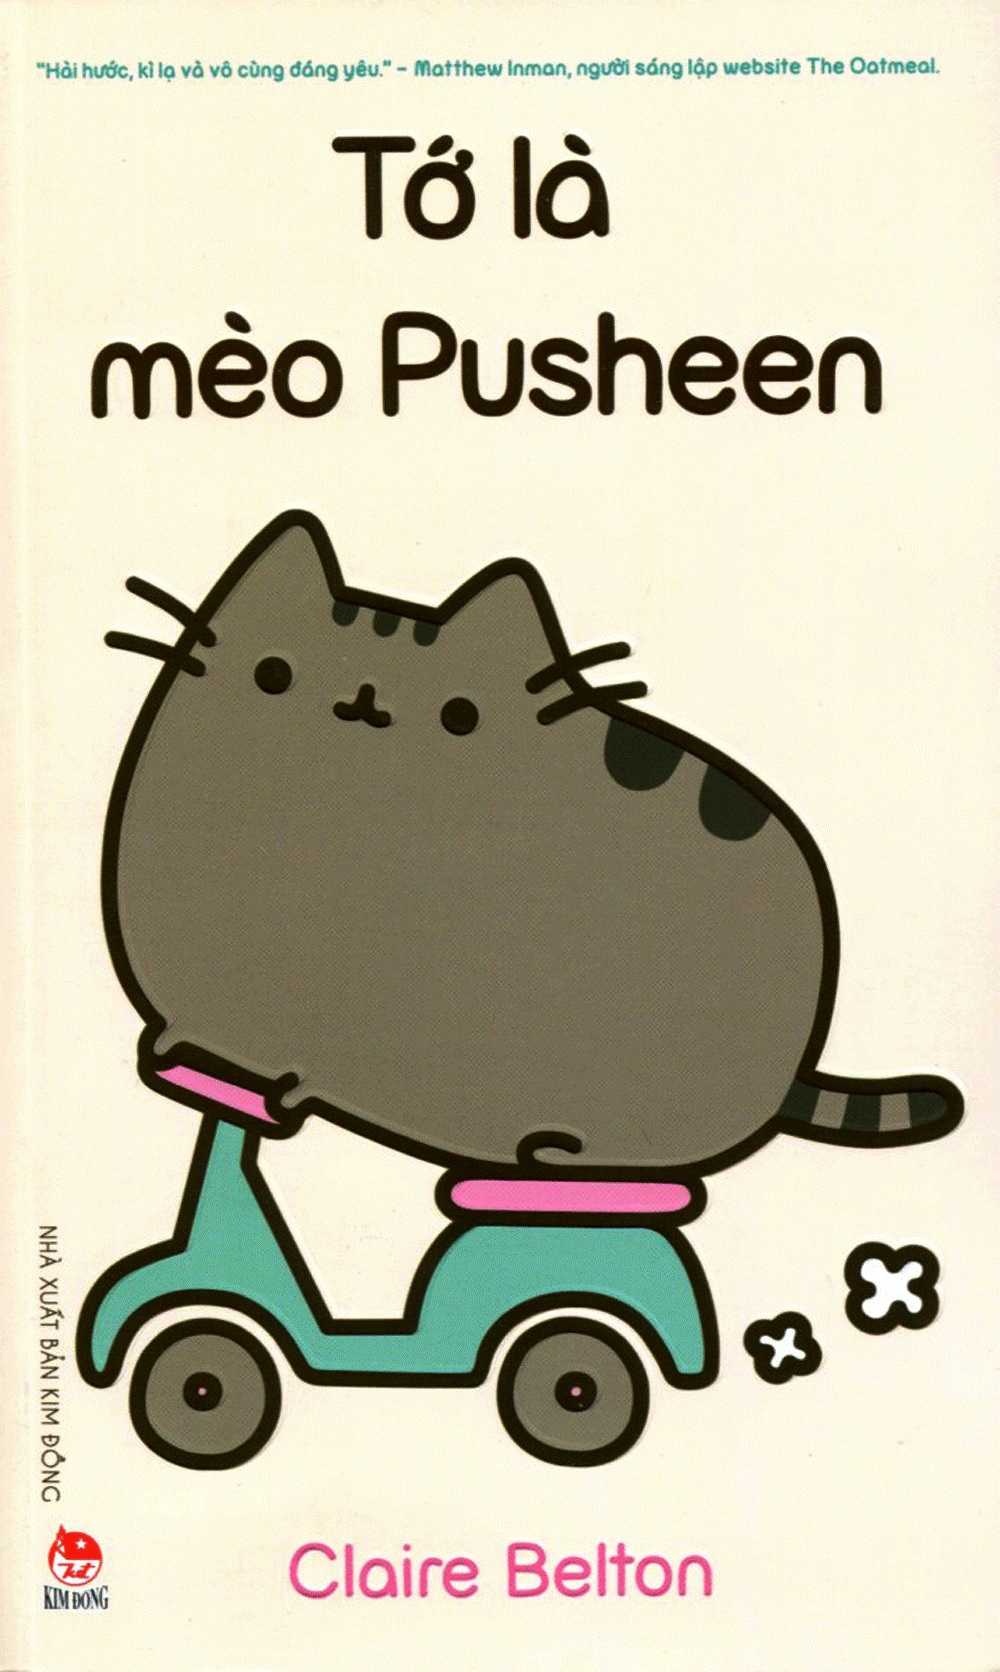 Mèo Pusheen Cute: Nếu bạn yêu mèo và những thứ dễ thương thì đây chắc chắn là hình ảnh bạn không thể bỏ lỡ. Bạn sẽ phải cười toe toét trước vẻ đáng yêu và hài hước của Pusheen trên mỗi bức ảnh.